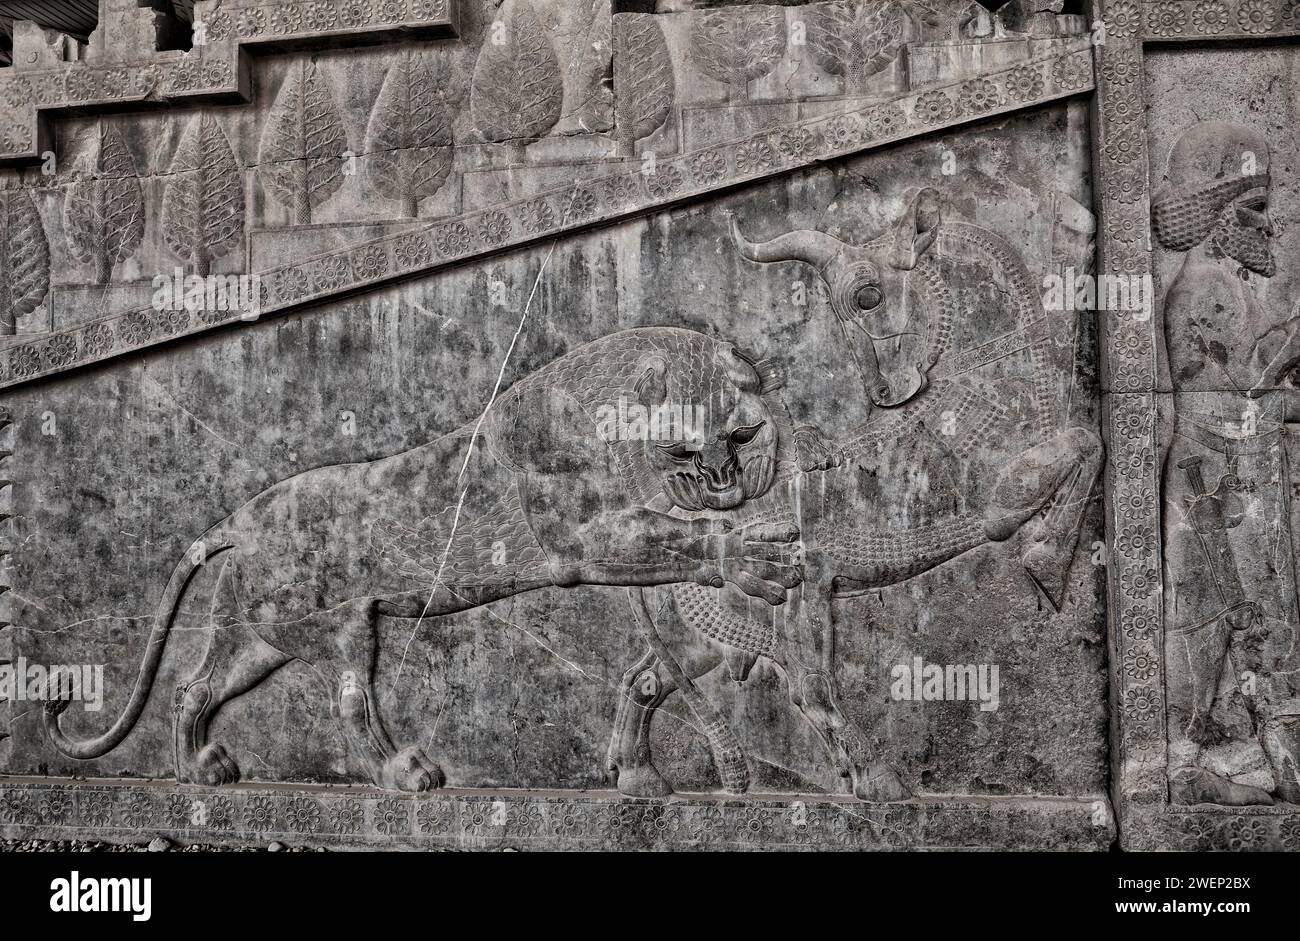 Bas-relief ornant l'escalier du Palais Apadana représente un lion attaquant un taureau, symbole du printemps battant l'hiver. Persépolis, Iran. Banque D'Images